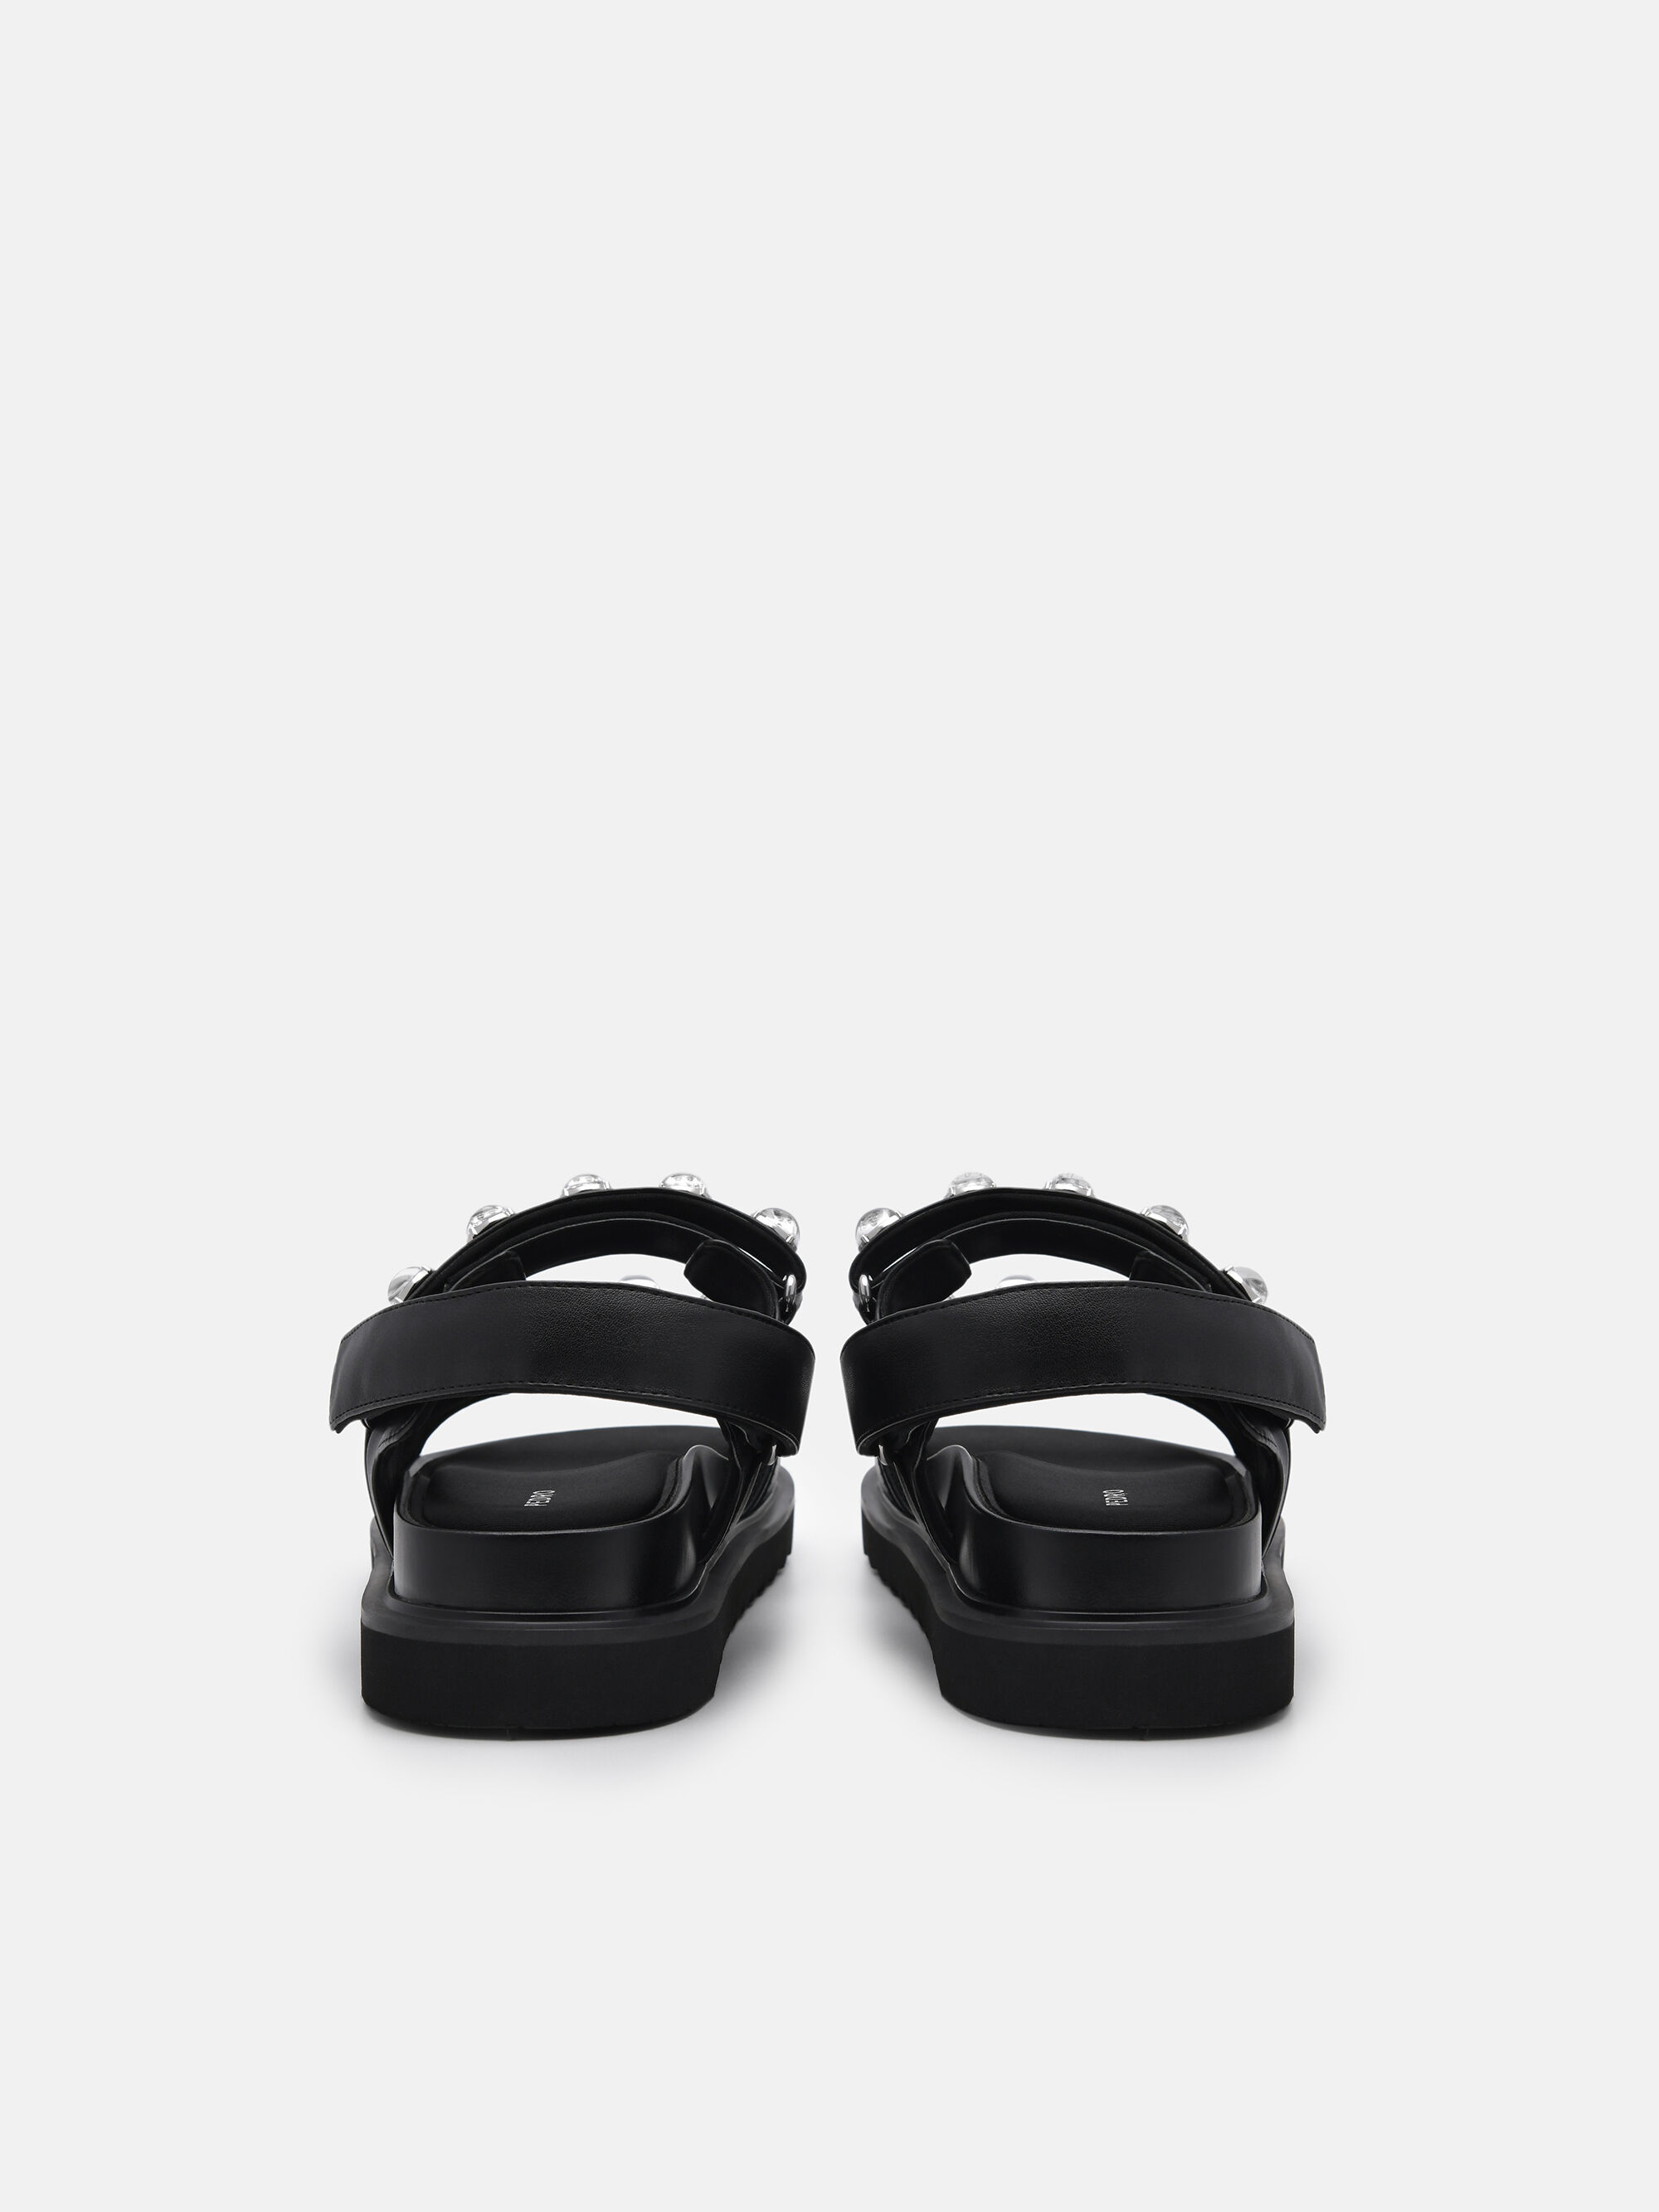 Luma Slingback Sandals, Black, hi-res